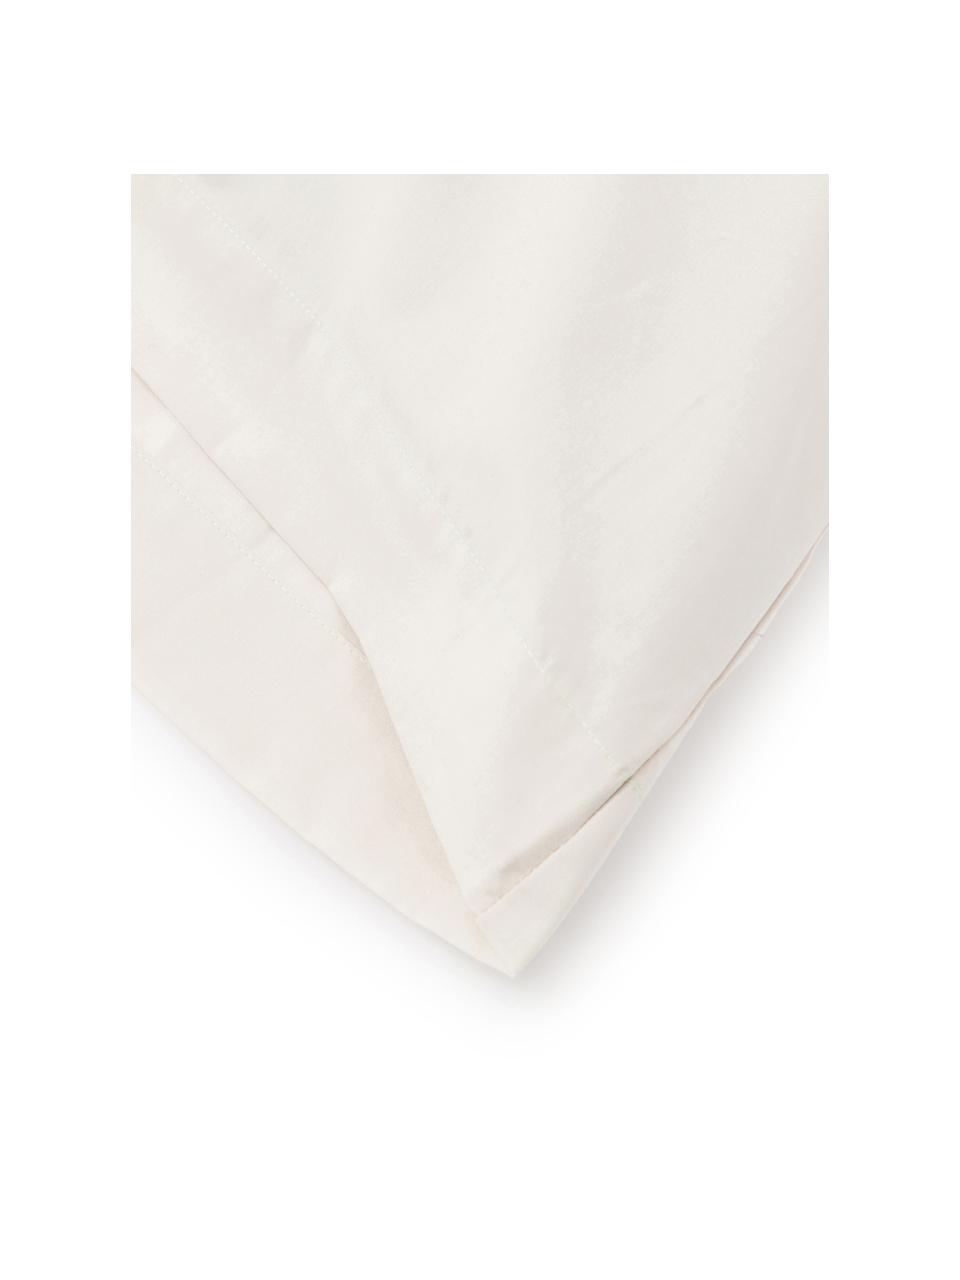 Fundas de almohada Plain Dye, 2 uds., 50 x 85 cm, 100% algodón
El algodón da una sensación agradable y suave en la piel, absorbe bien la humedad y es adecuado para personas alérgicas, Crema, An 50 x L 85 cm